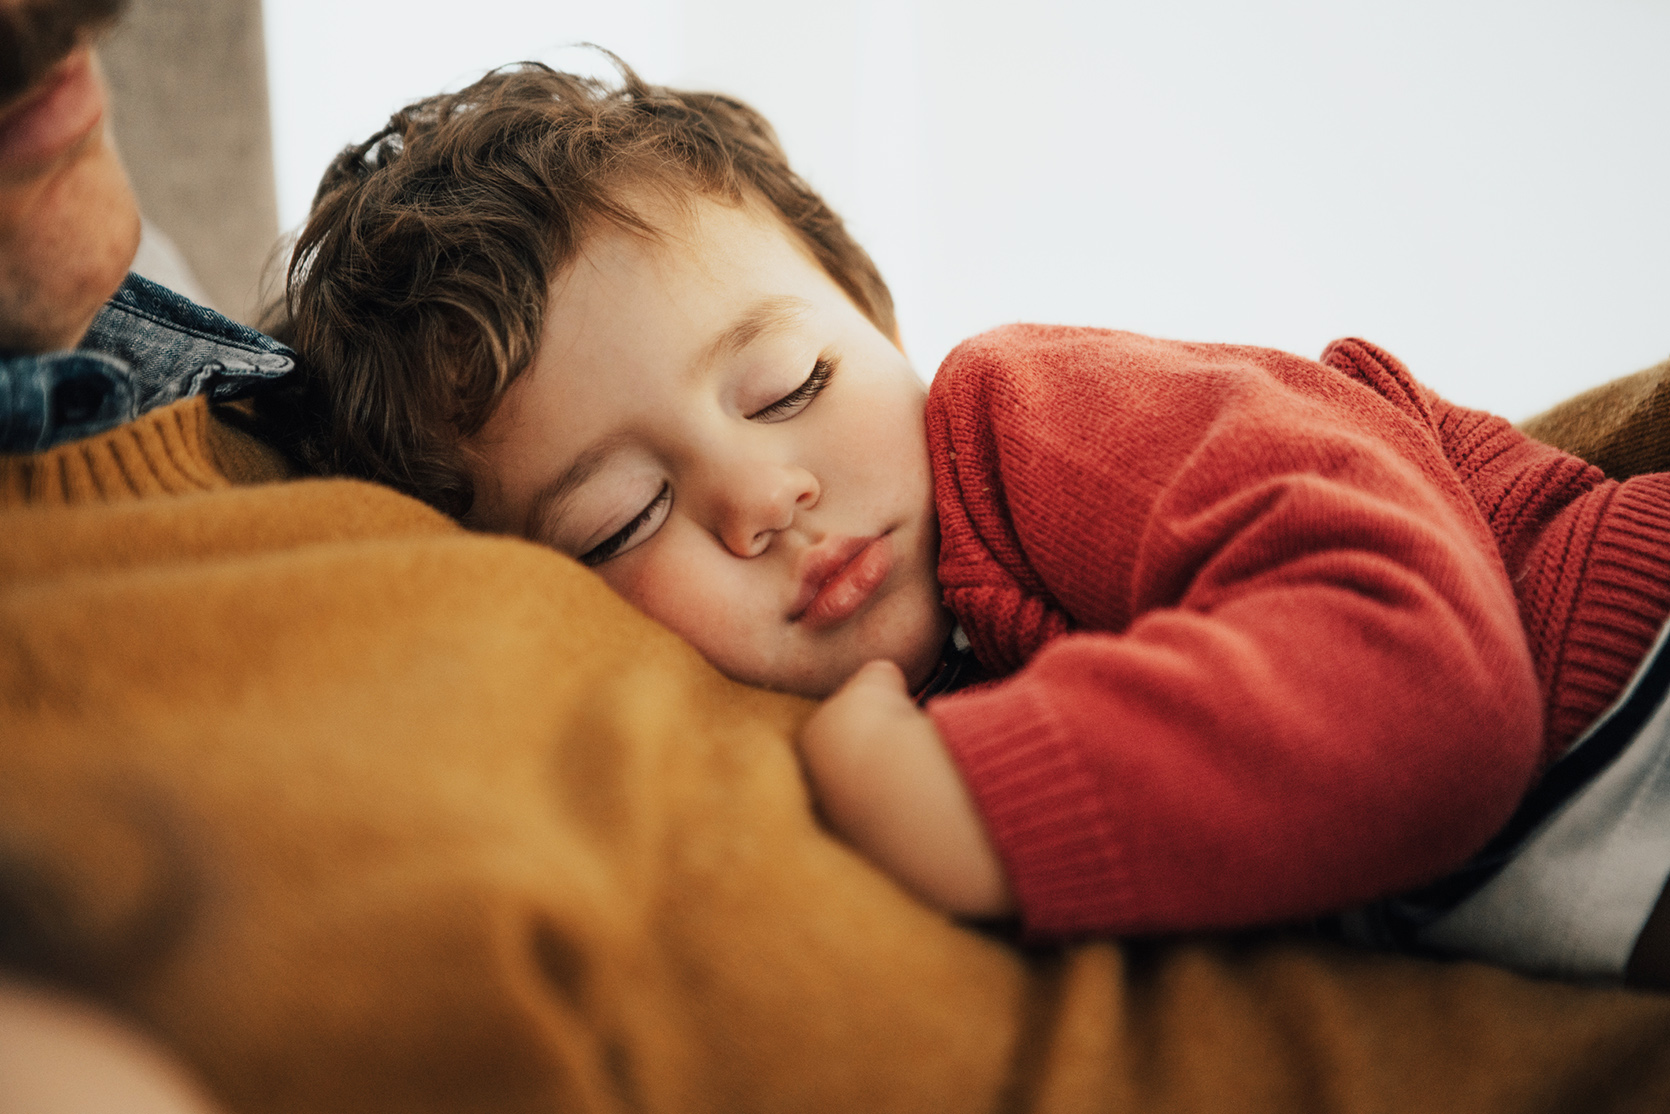 Trudne pytania – jak oduczyć dziecko spania z rodzicami?/fot. iStock